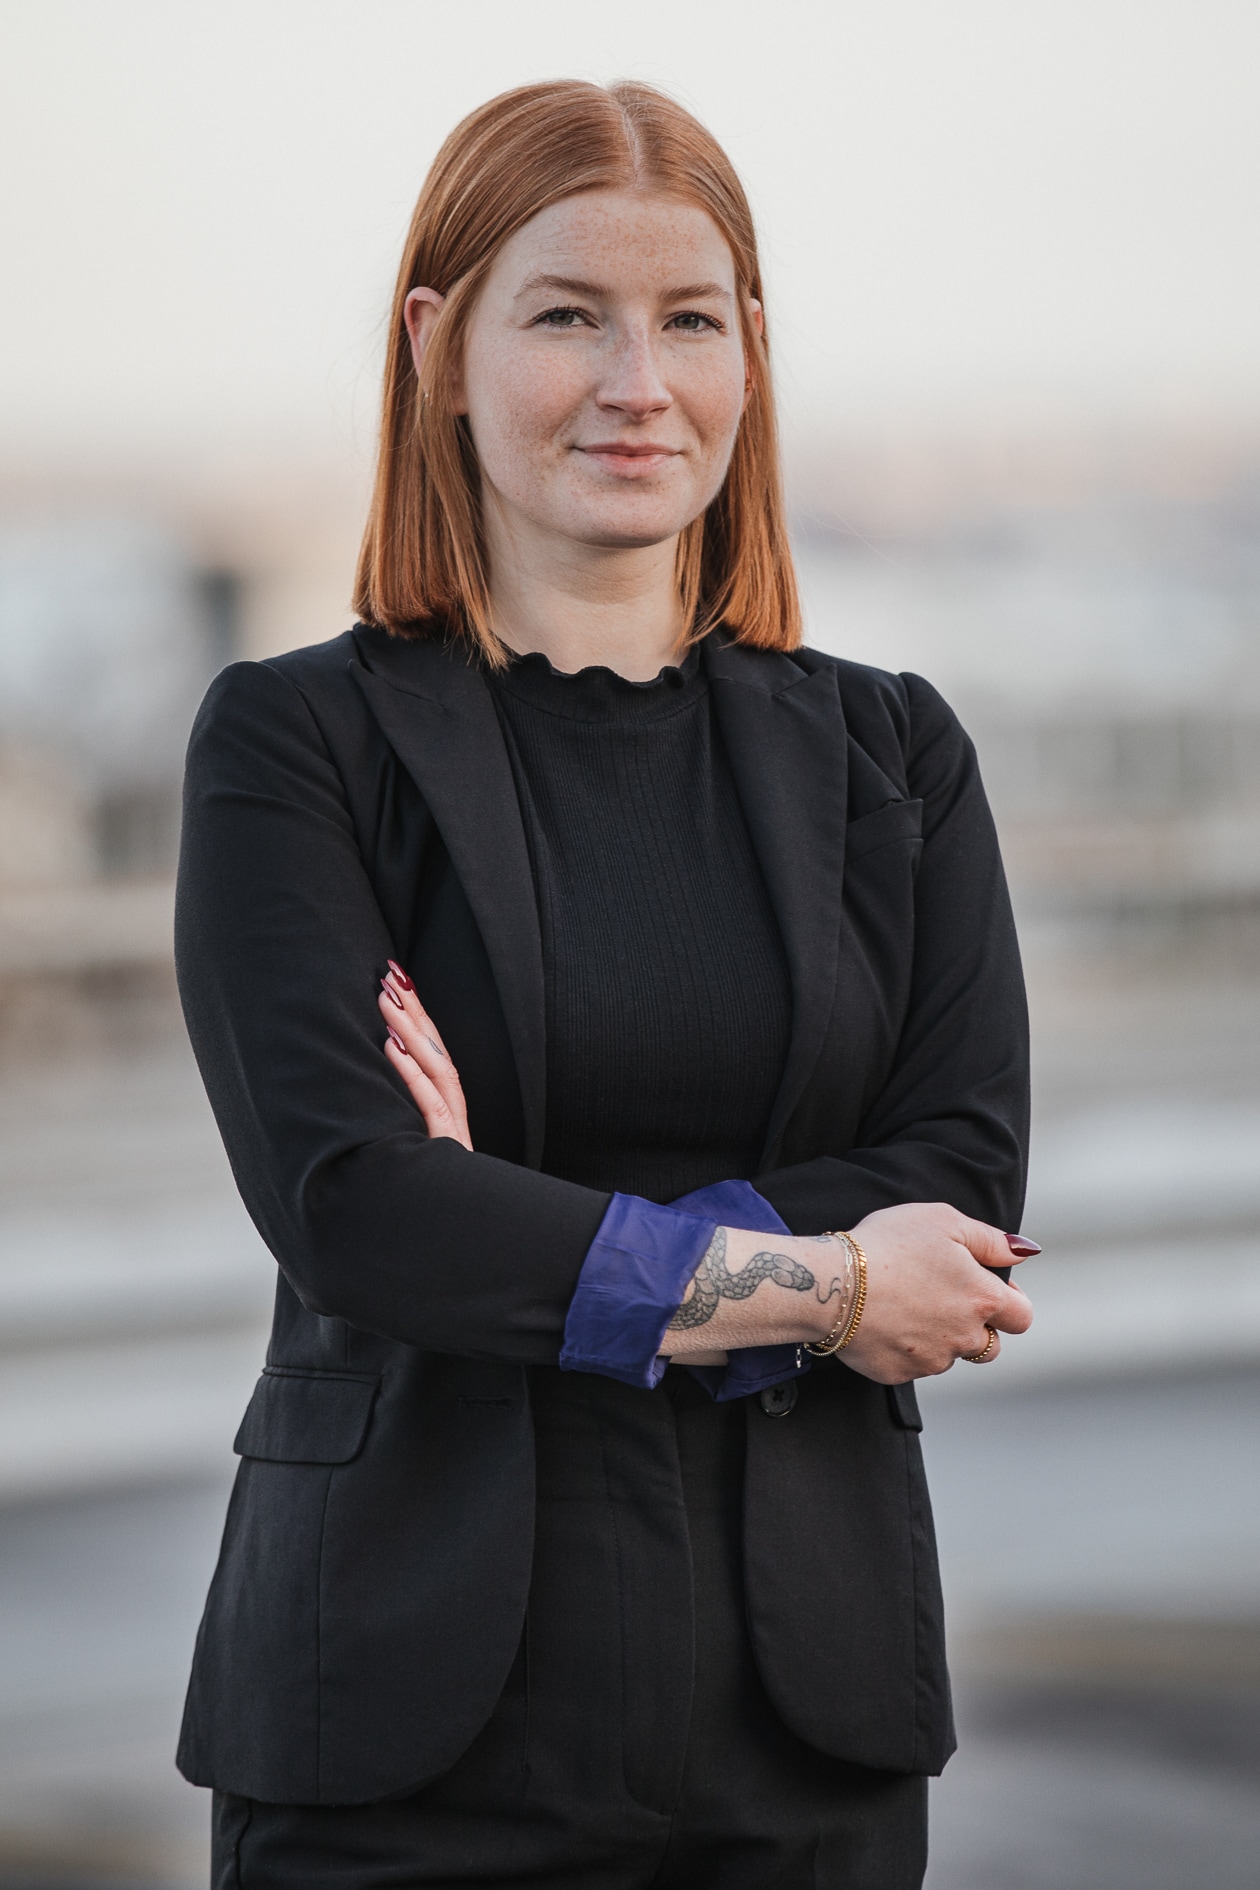 Moderne junge Business Frau mit roten Haaren und verschwommenen Aachener Hintergrund